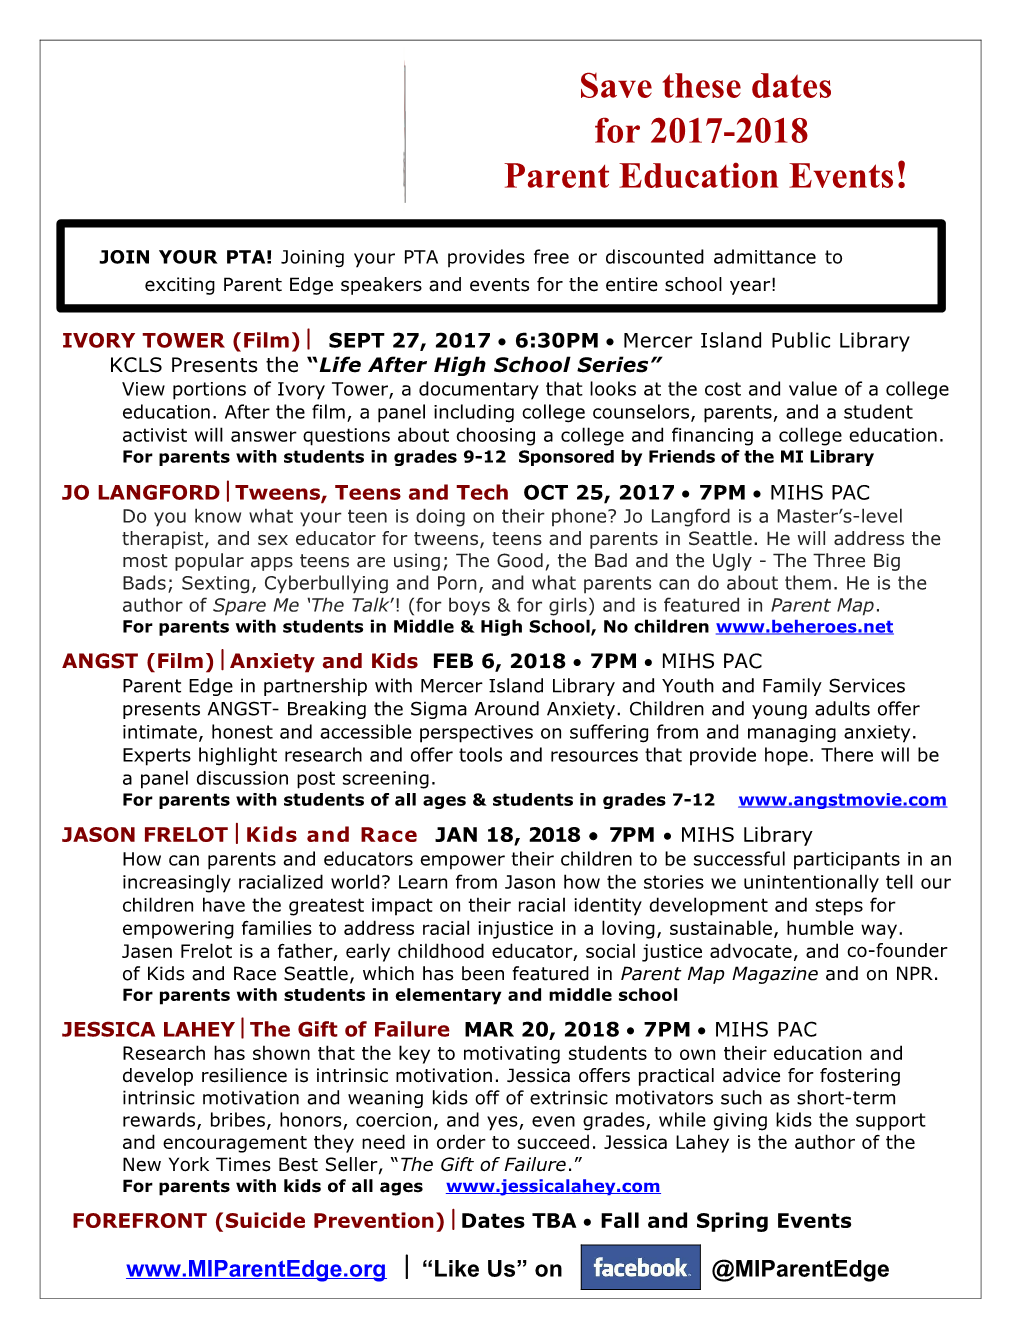 Parent Education Events!